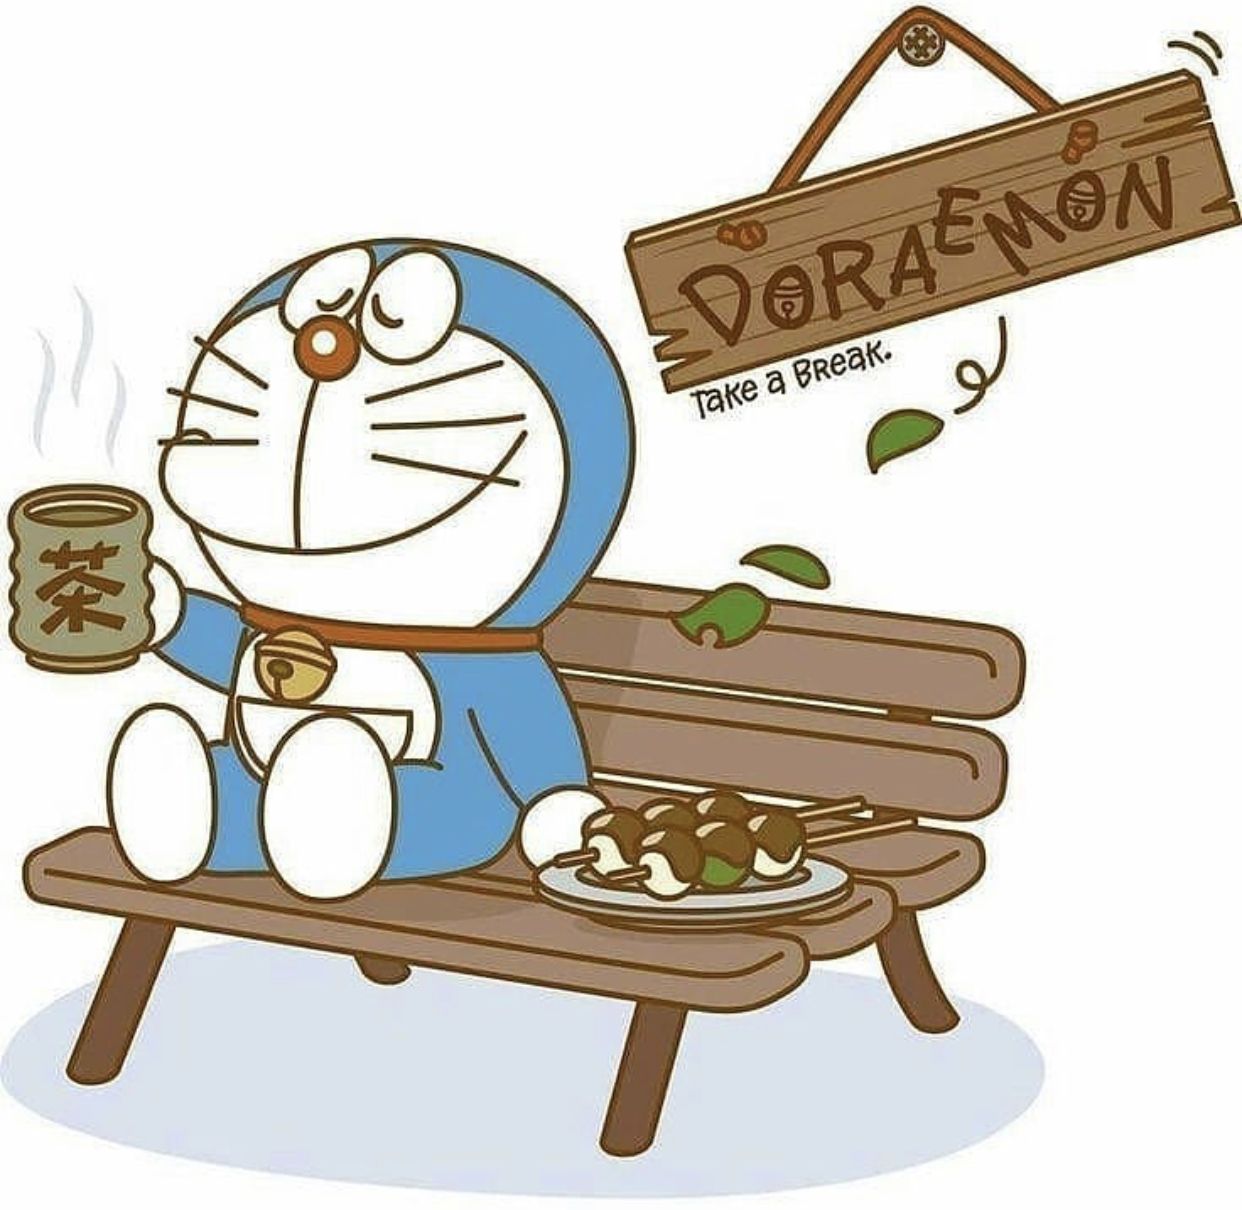 Bạn yêu thích Doremon? Hãy xem avatar Doremon đẹp này và cảm nhận sự vui tươi, đáng yêu và hài hước đến từ chú mèo máy này. Bạn sẽ không thể rời mắt khỏi hình ảnh đáng yêu này!